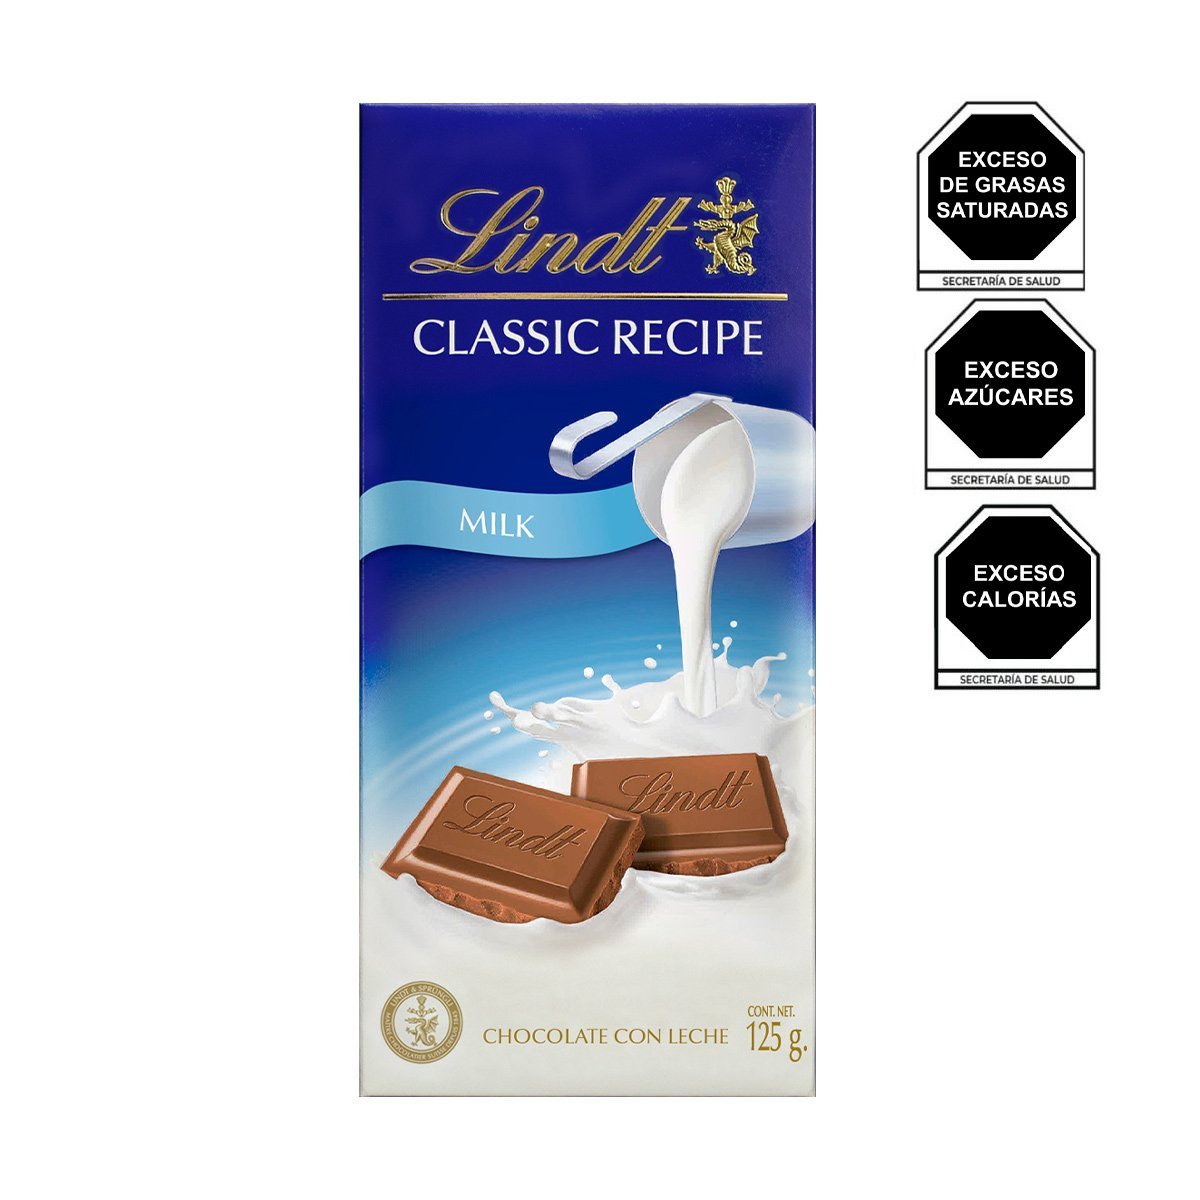 Tablilla de Chocolate con Leche 125 Gr Classic Recipe